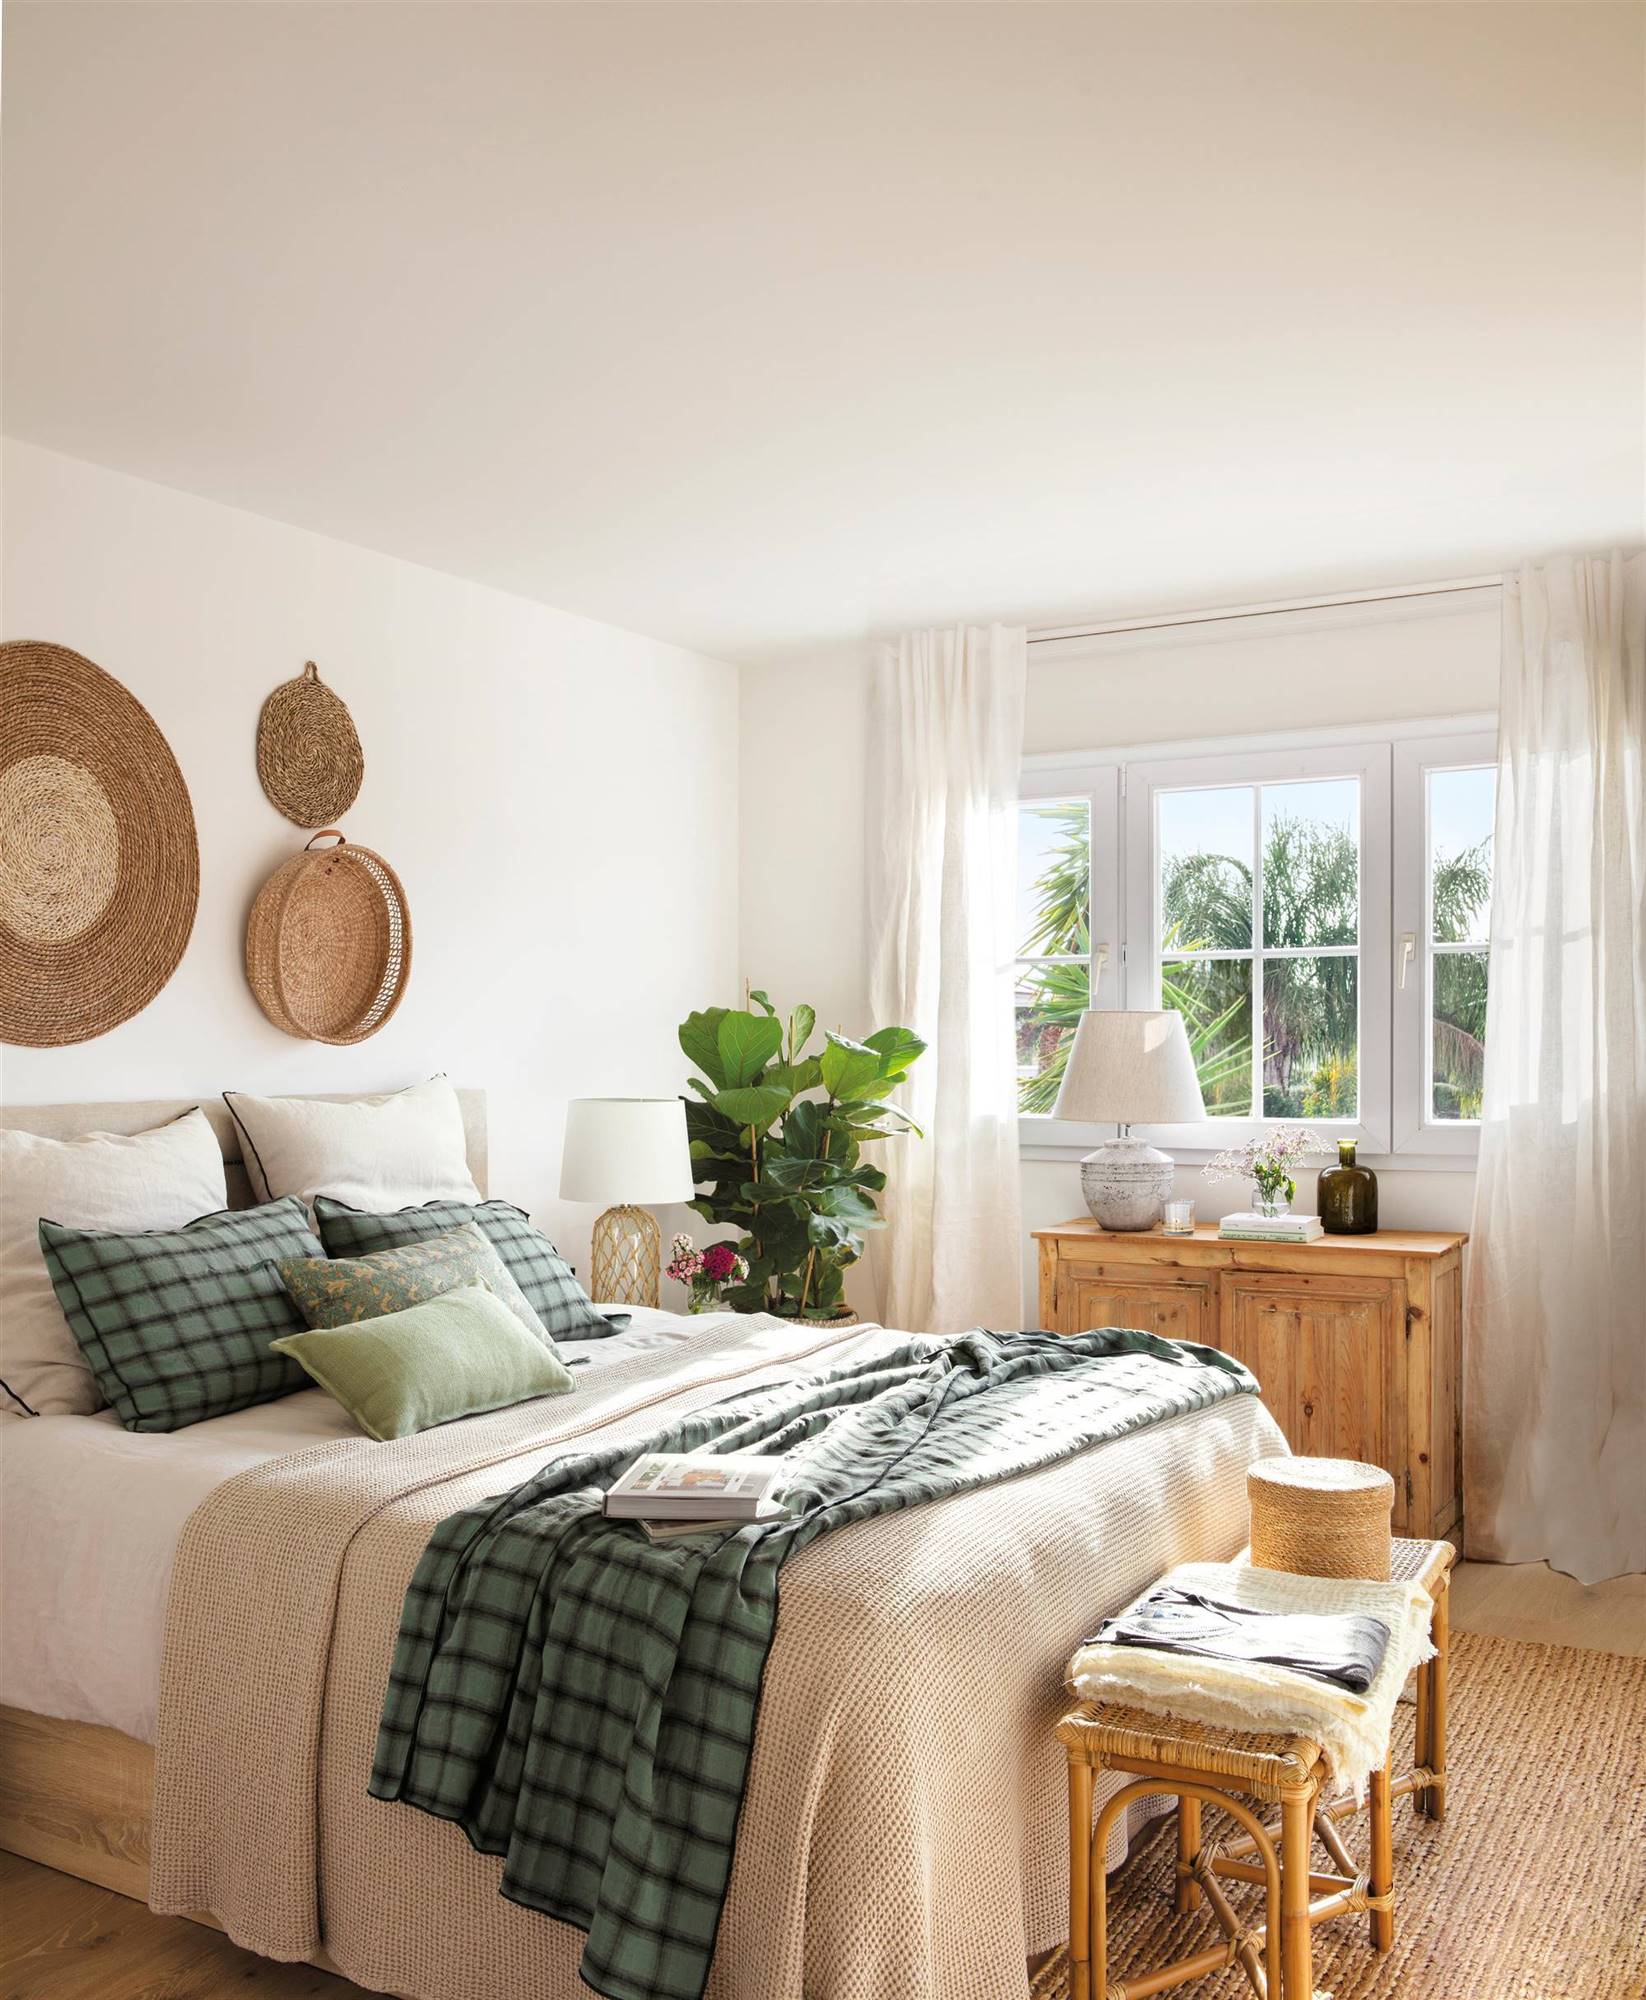 Dormitorio natural y relajado con decoración de pared de fibra natural.